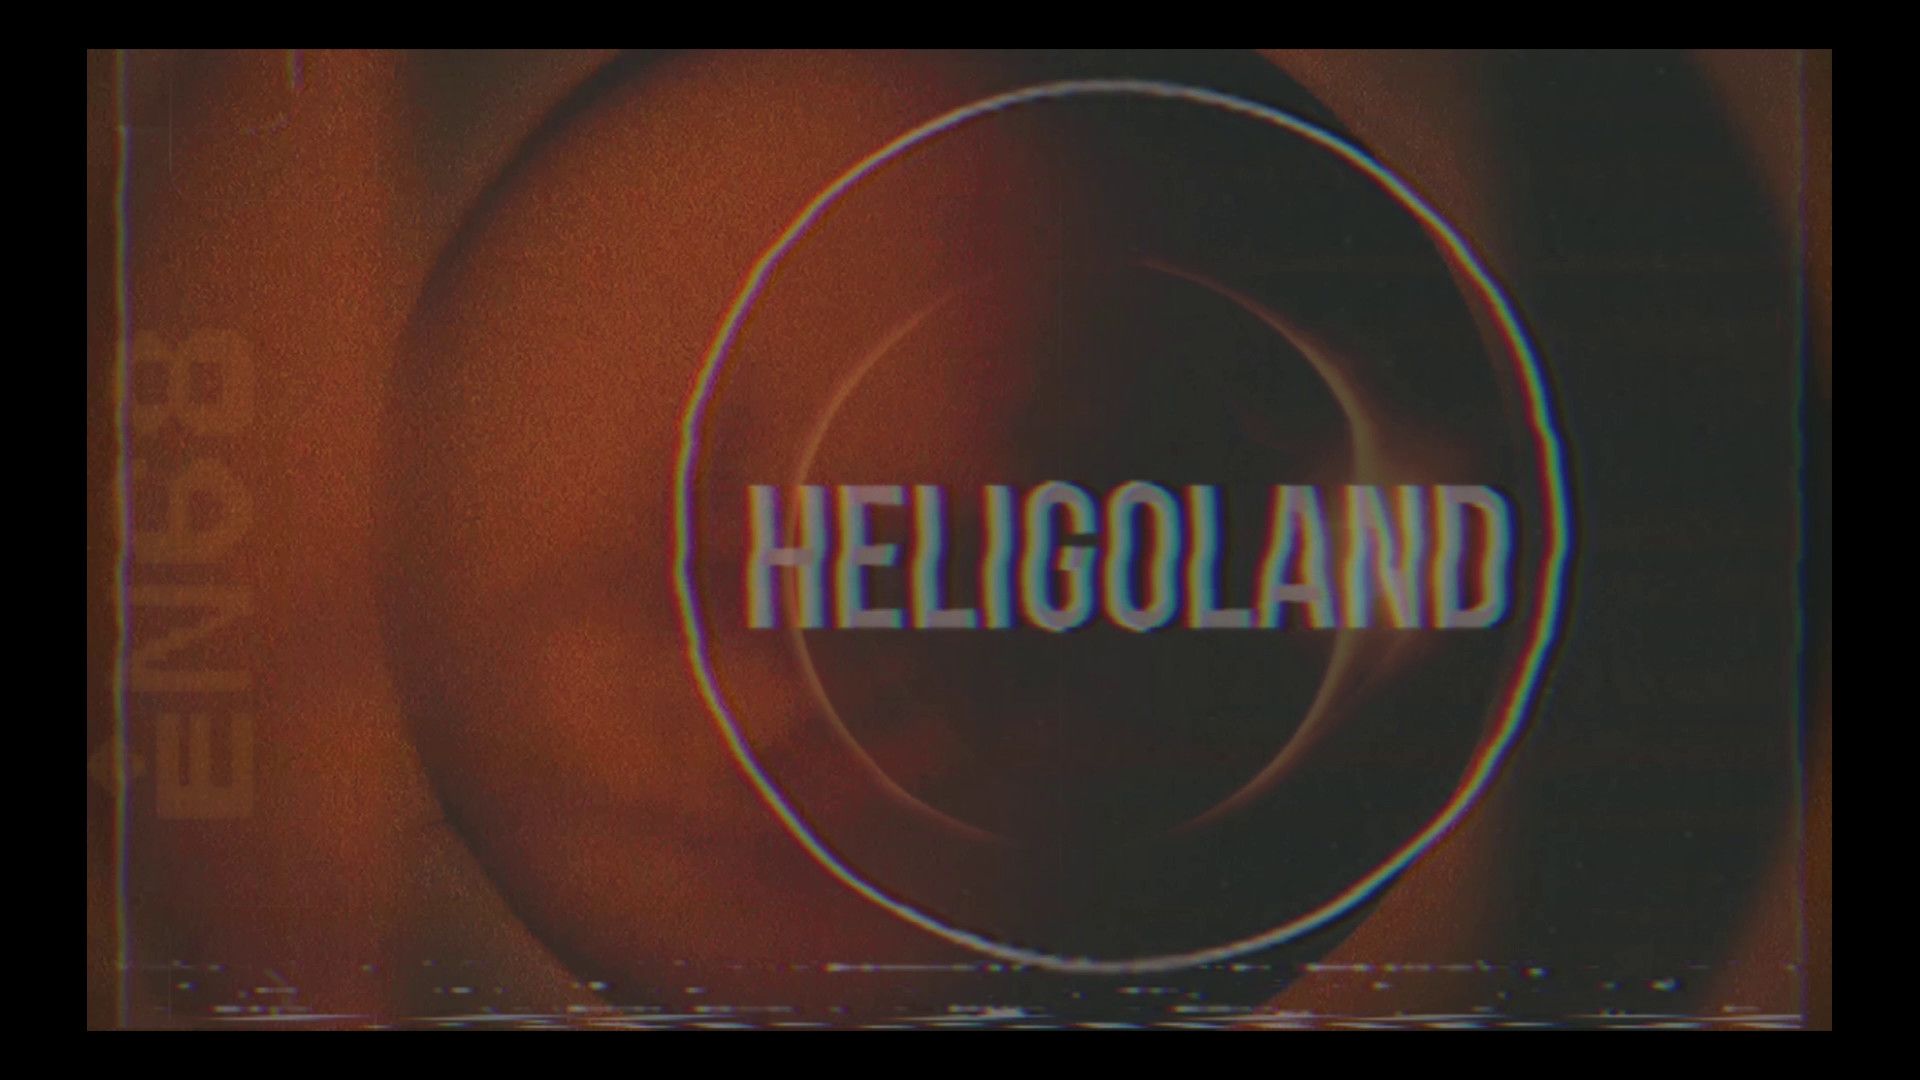 HELIGOLAND: Life Under a Black Sun